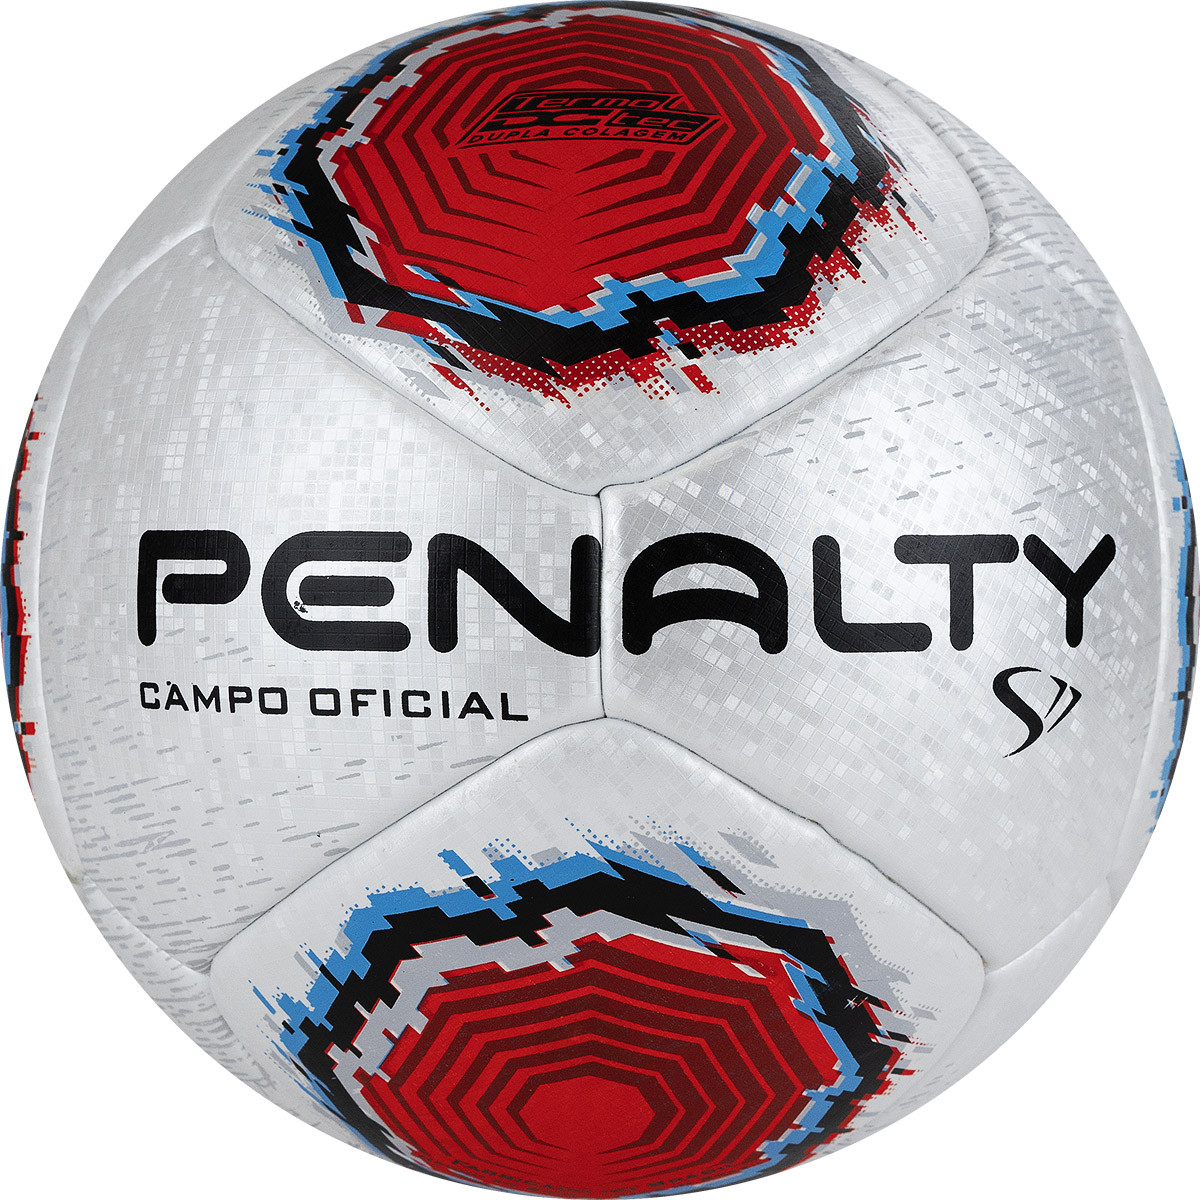 Мяч футбольный Penalty Bola Campo S11 R1 XXII, 5416261610-U, PU, термосшивка, серебр-красно-синий,  - купить со скидкой